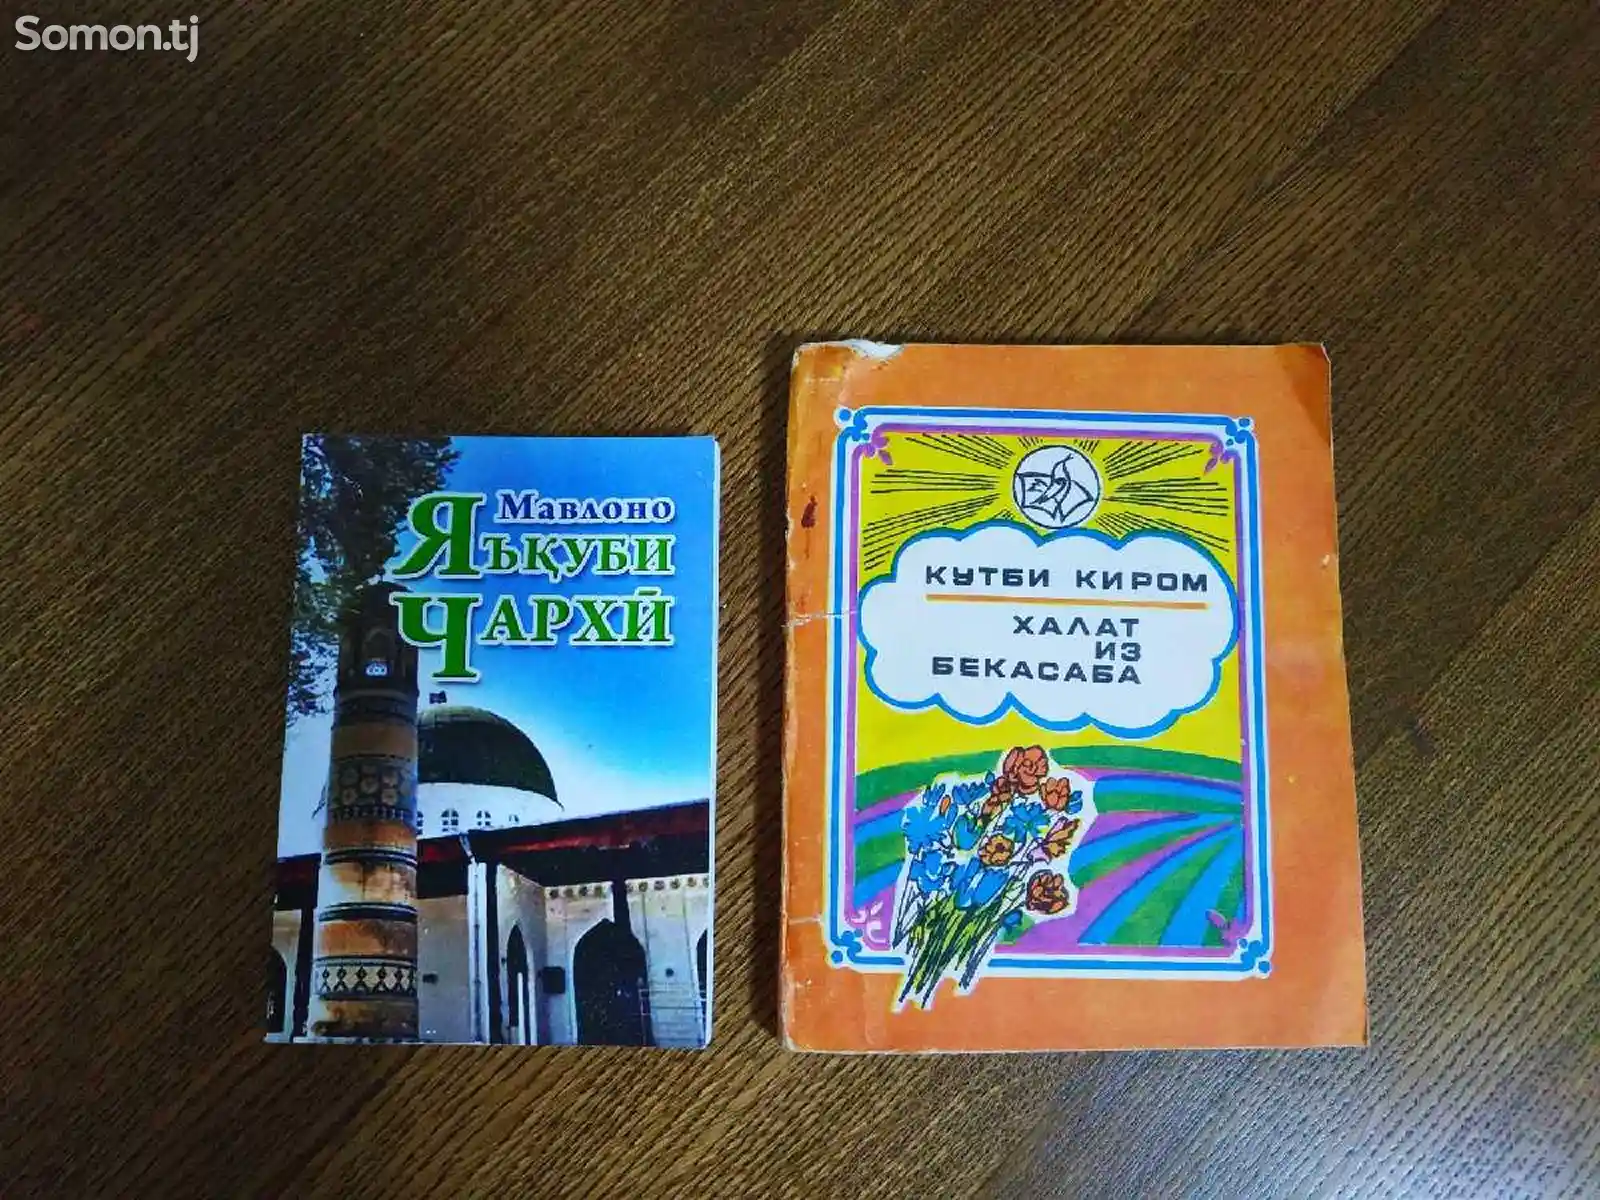 Брошюры на таджикском языке